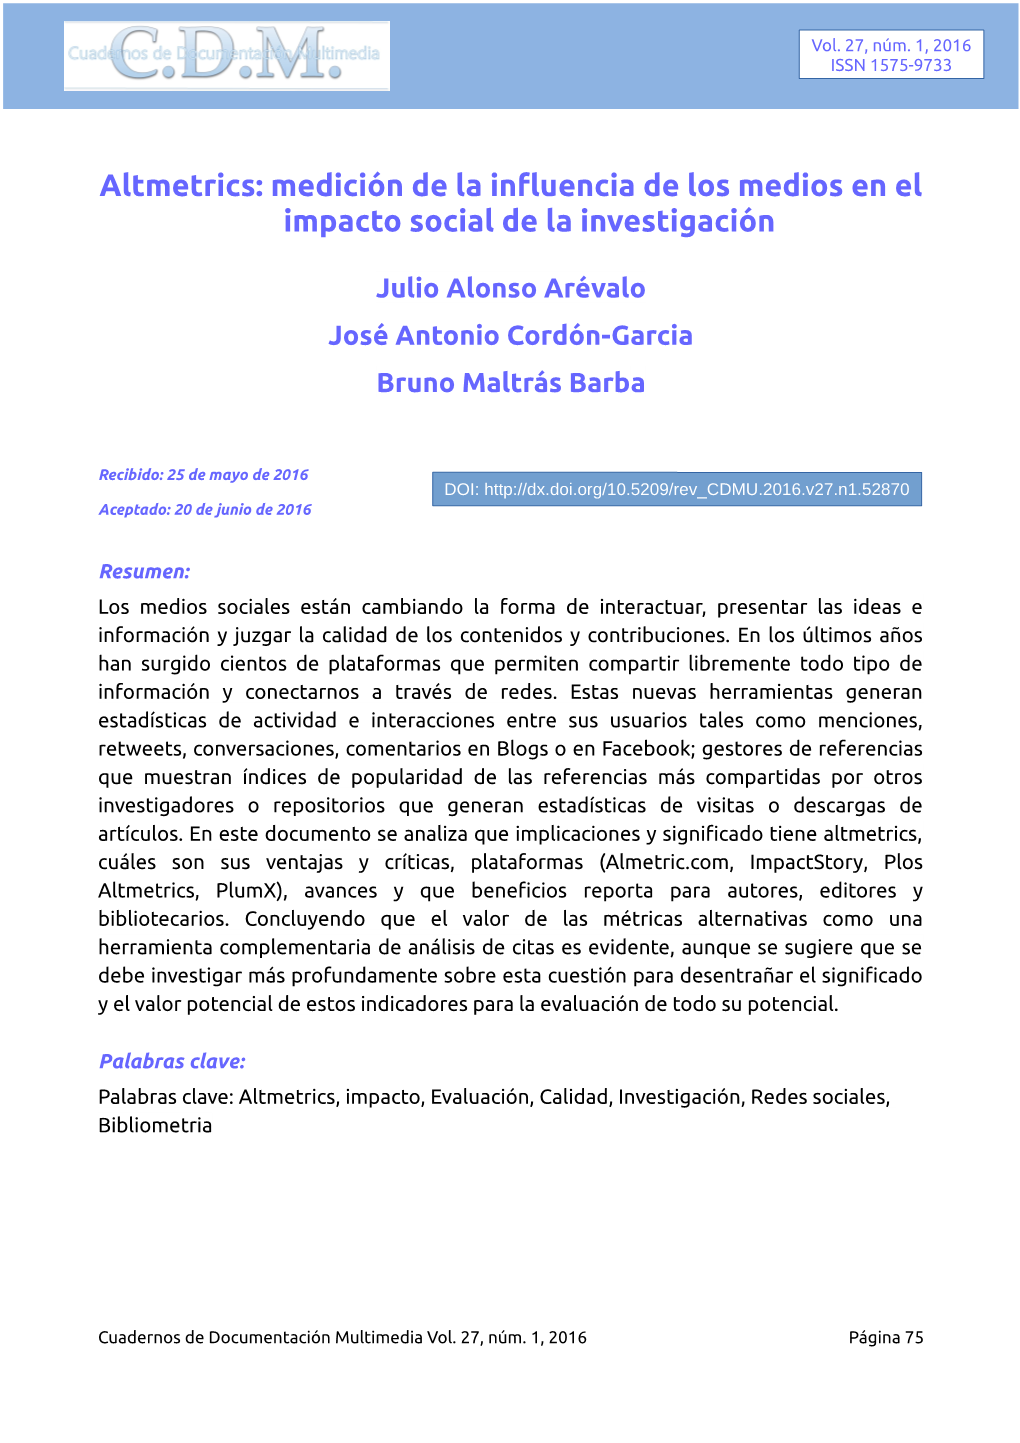 Altmetrics: Medición De La Influencia De Los Medios En El Impacto Social De La Investigación